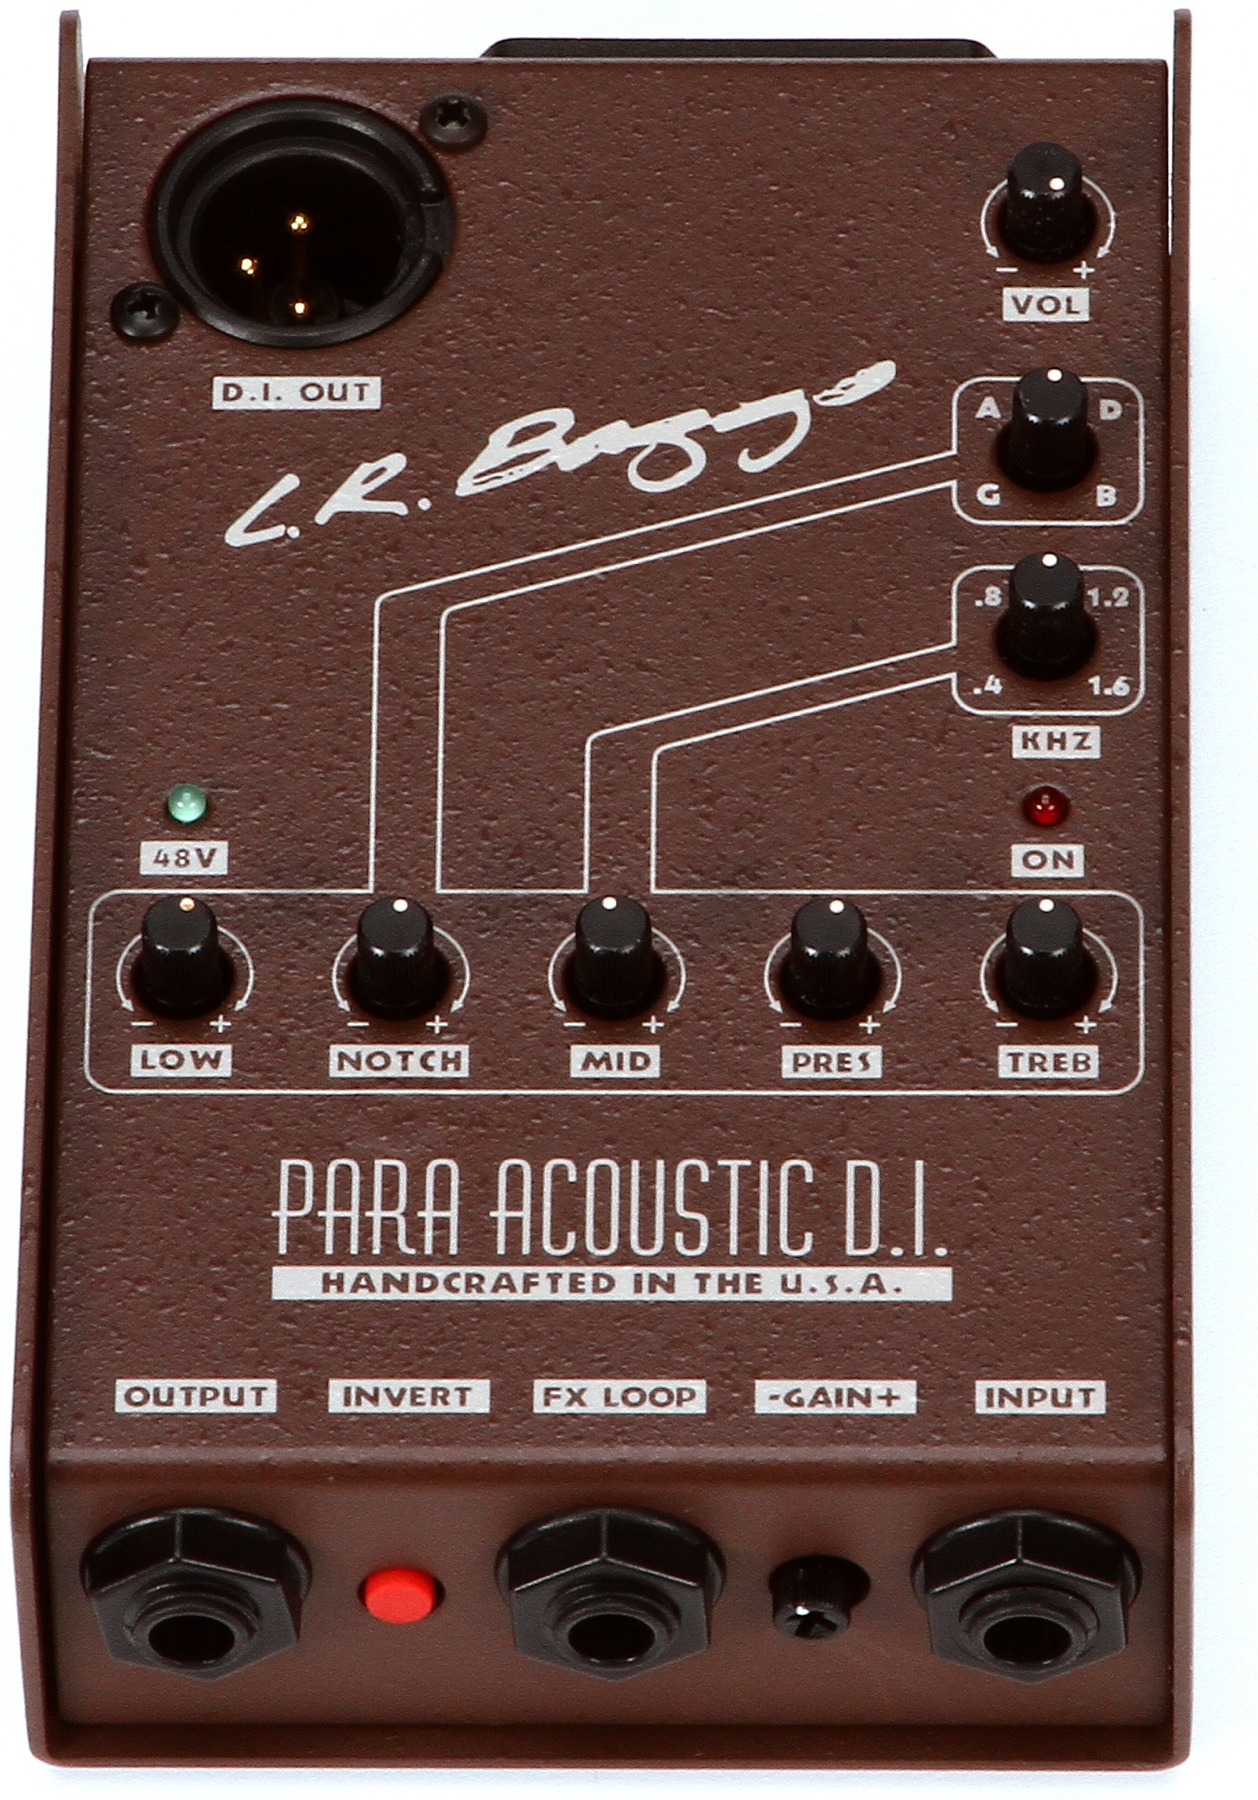 LR Baggs Para-Acoustic DI Pre-Amp - DjangoBooks.com